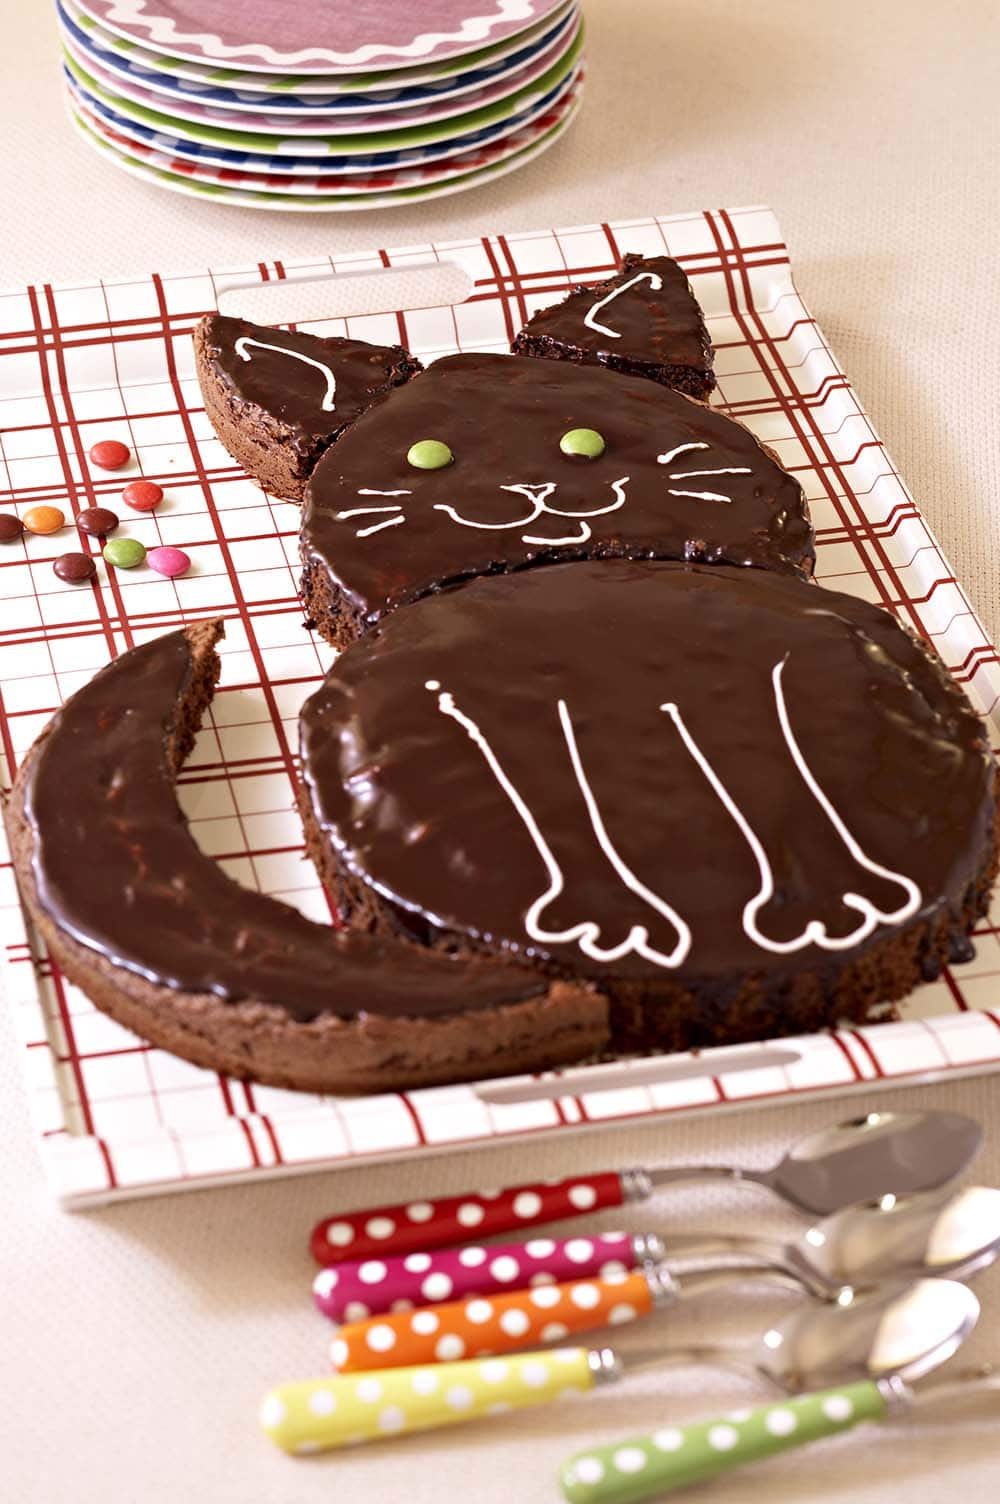 Торт для кошек рецепты